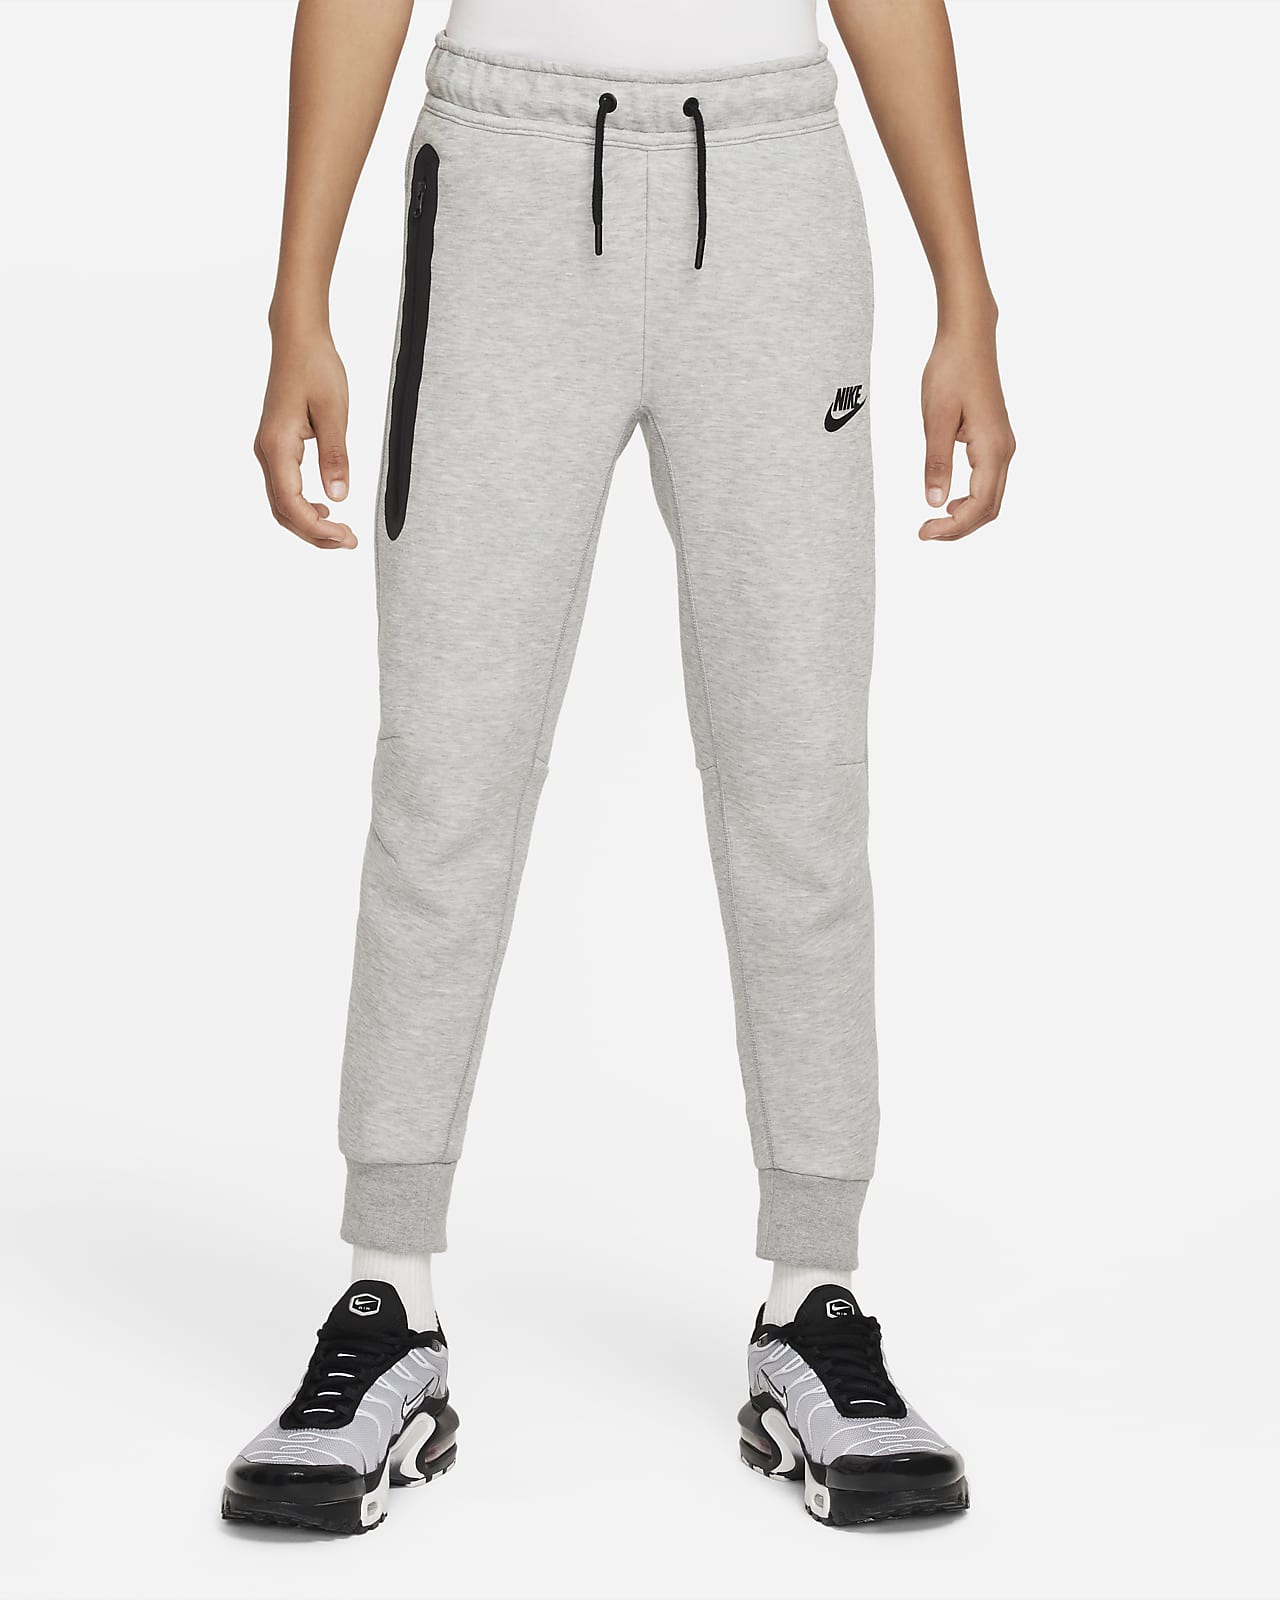 Buy Nike Youth Boys Fleece Pants M 1012 at Amazonin